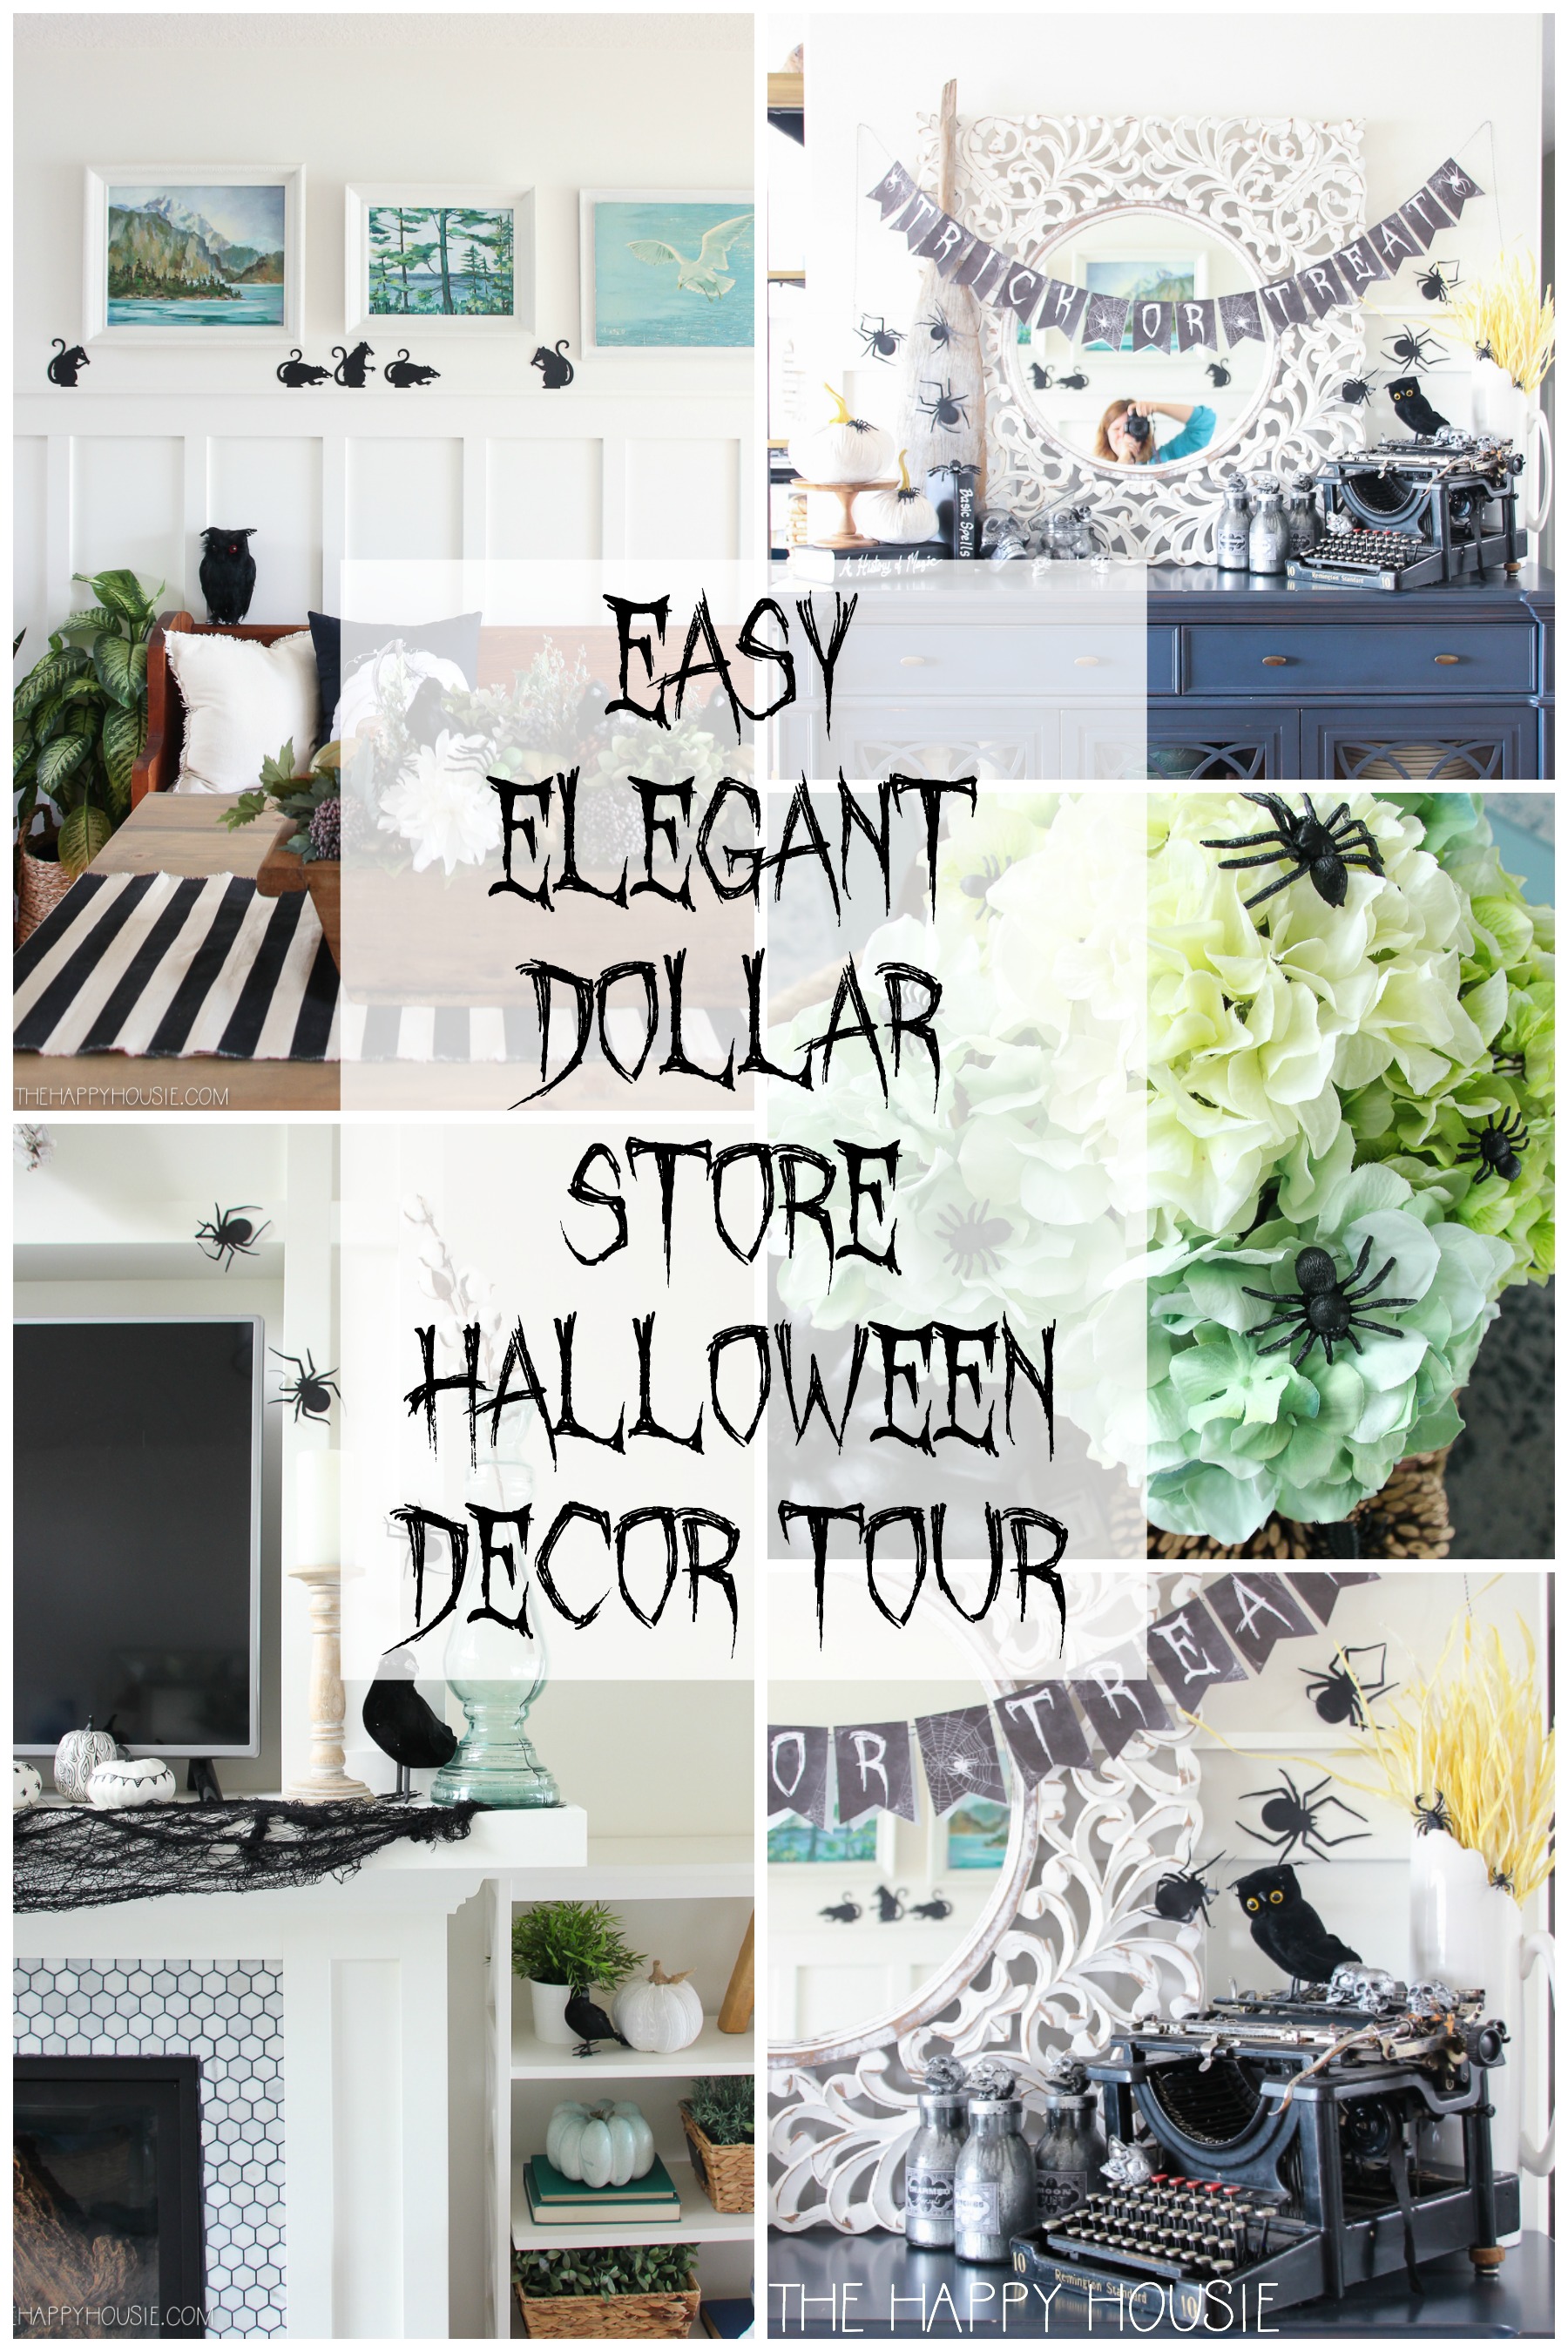 Easy Elegant Dollar Store Halloween Decor Ideas Mini Home Tour The Happy Housie